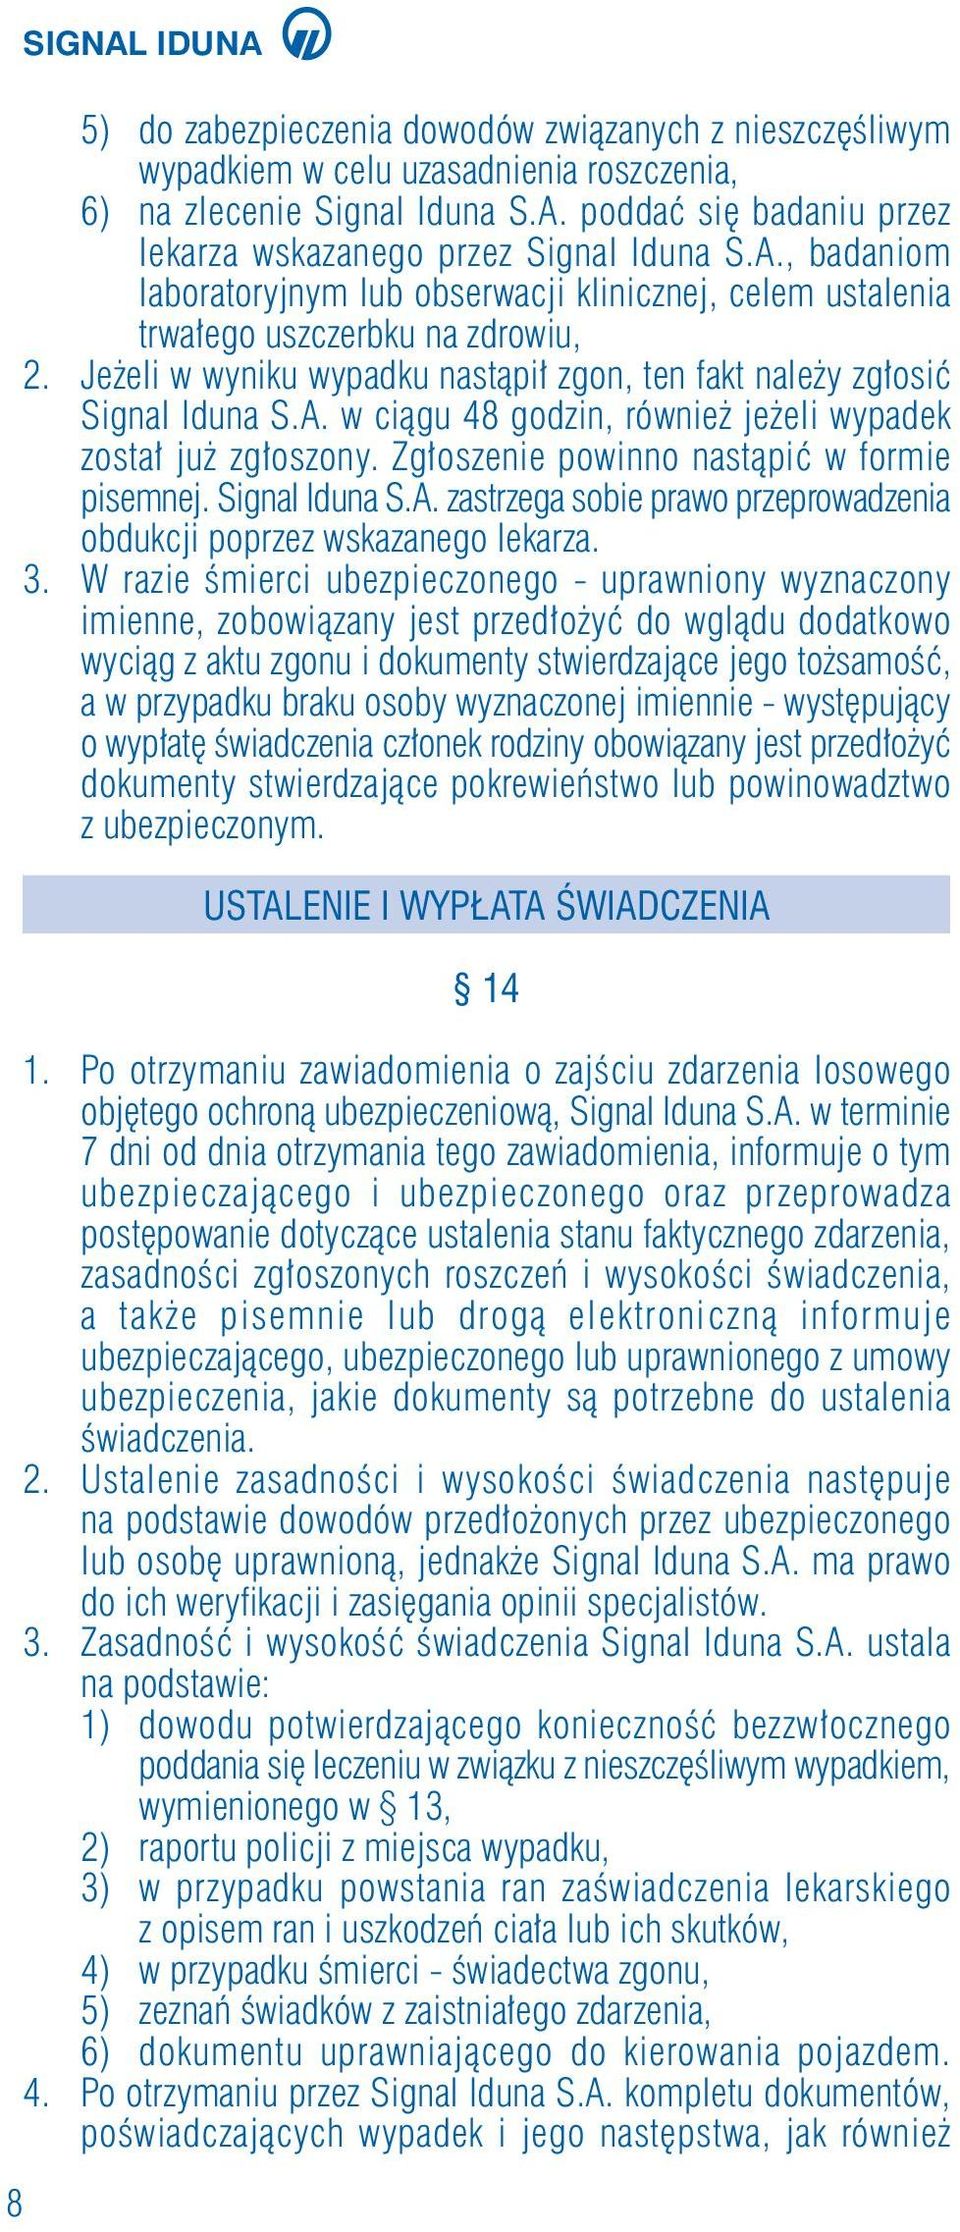 Zg oszenie powinno nastàpiç w formie pisemnej. Signal Iduna S.A. zastrzega sobie prawo przeprowadzenia obdukcji poprzez wskazanego lekarza. 3.